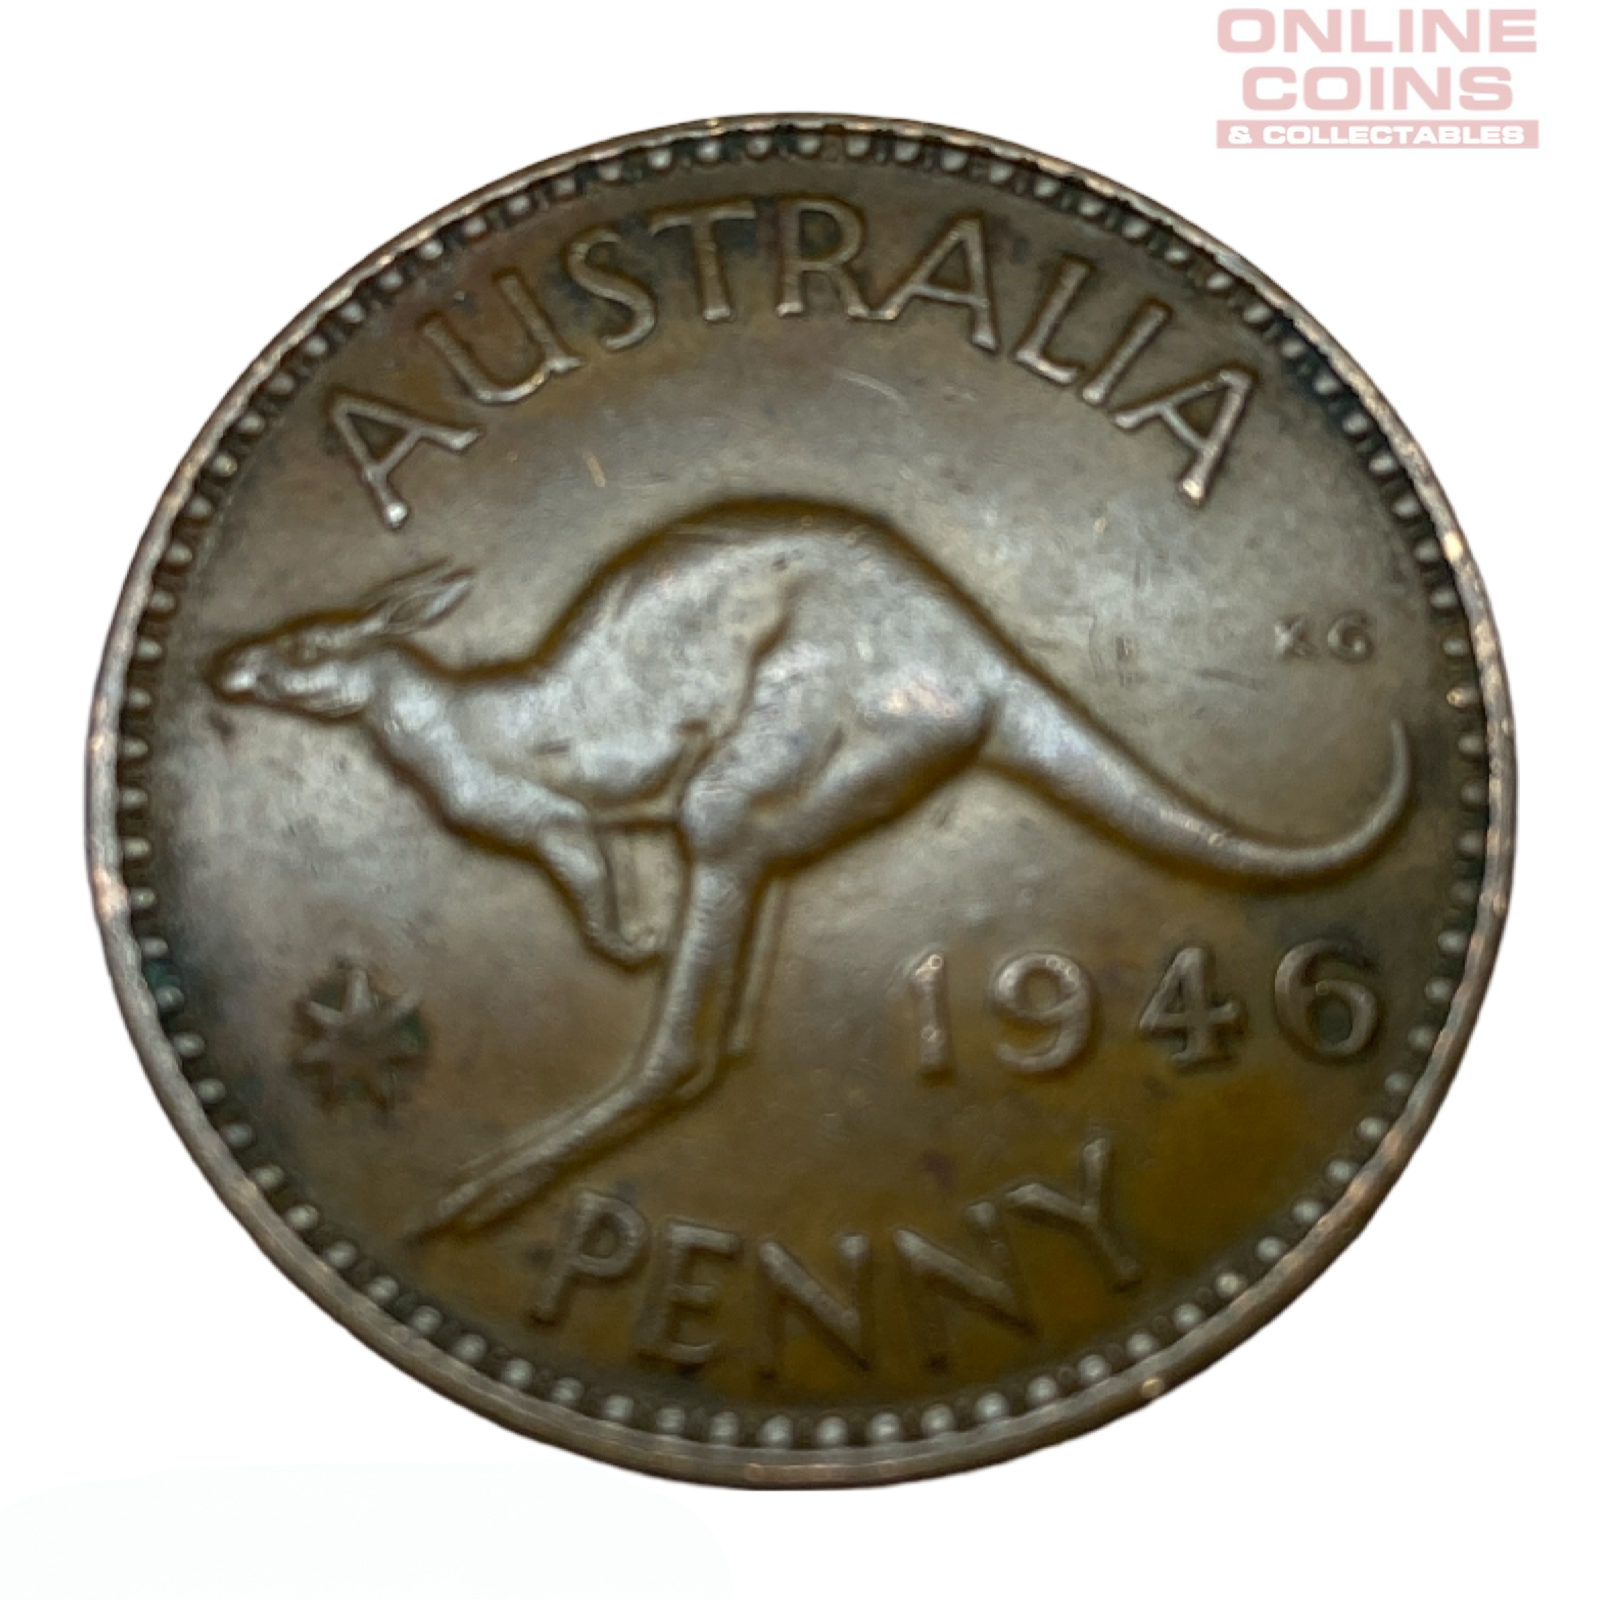 1946 Australian Penny - Very Fine